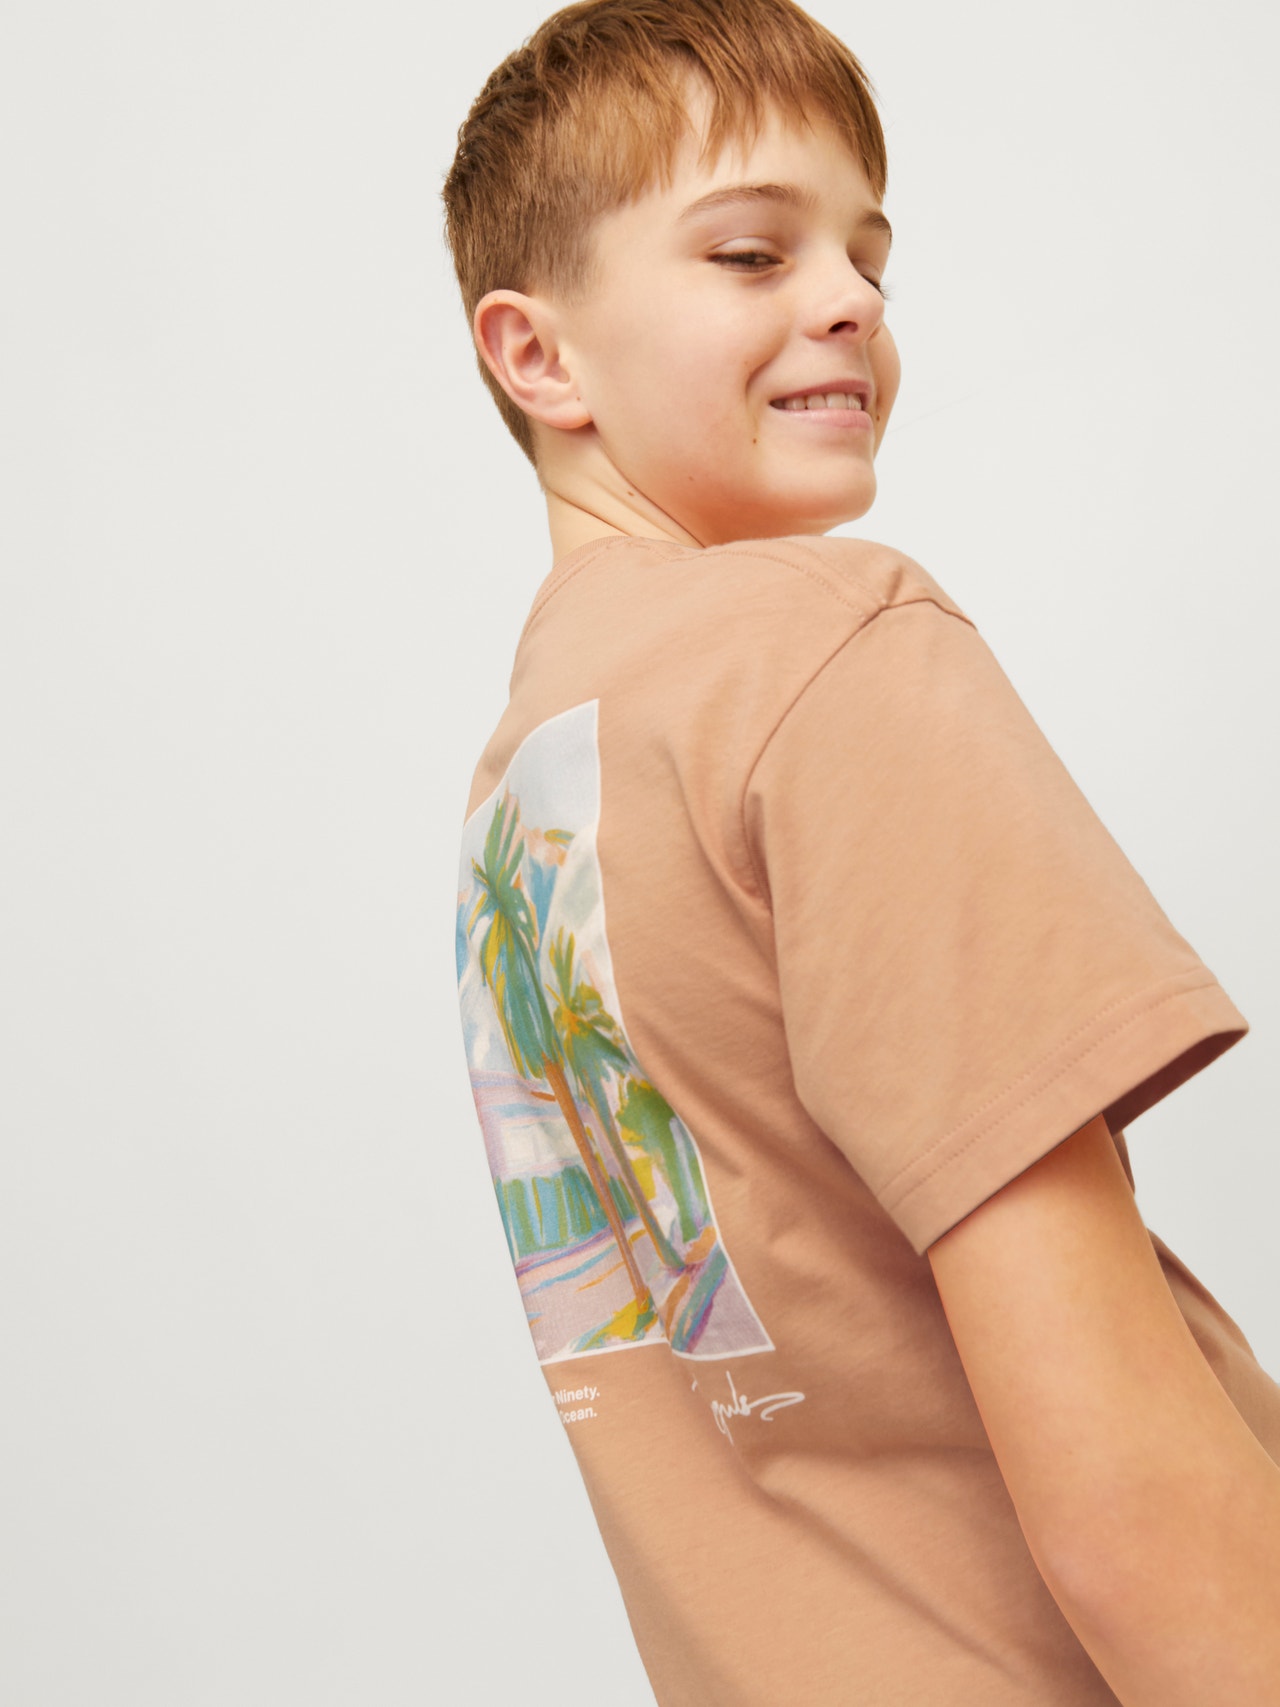 Jack & Jones Gedrukt T-shirt Voor jongens -Canyon Sunset - 12257134